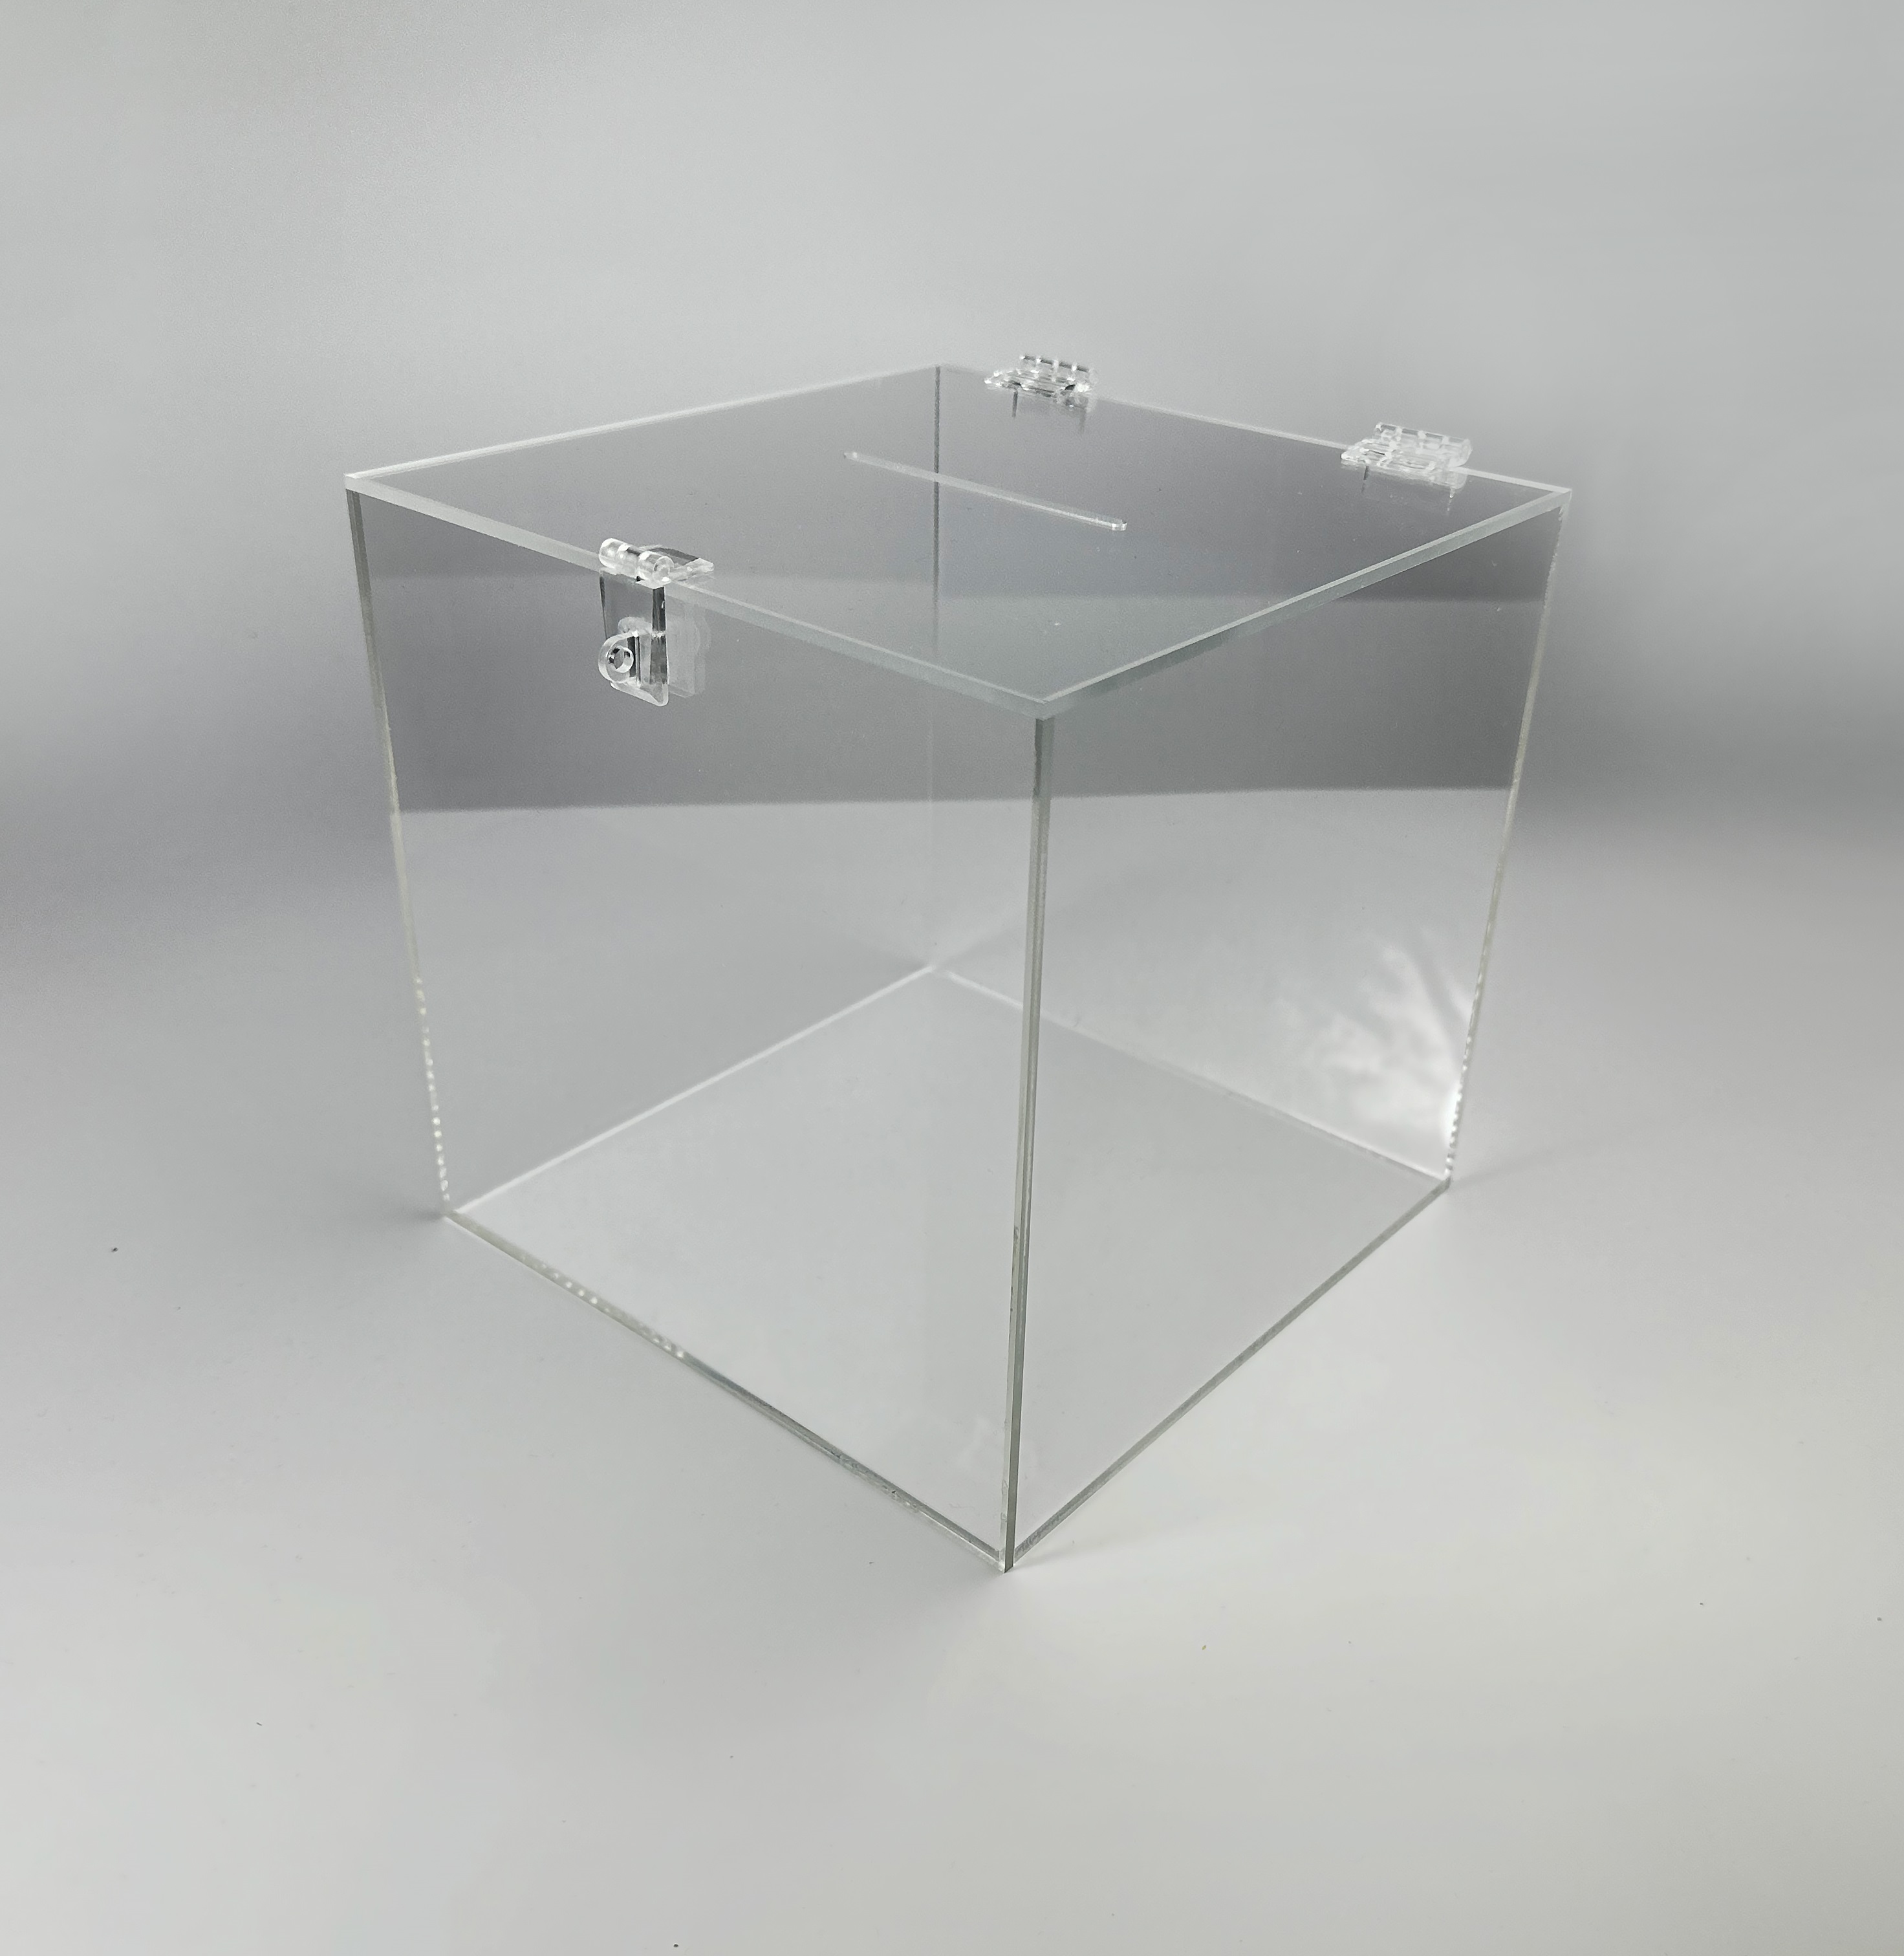 Urna cubica din plexiglas ,pentru tombole / donații